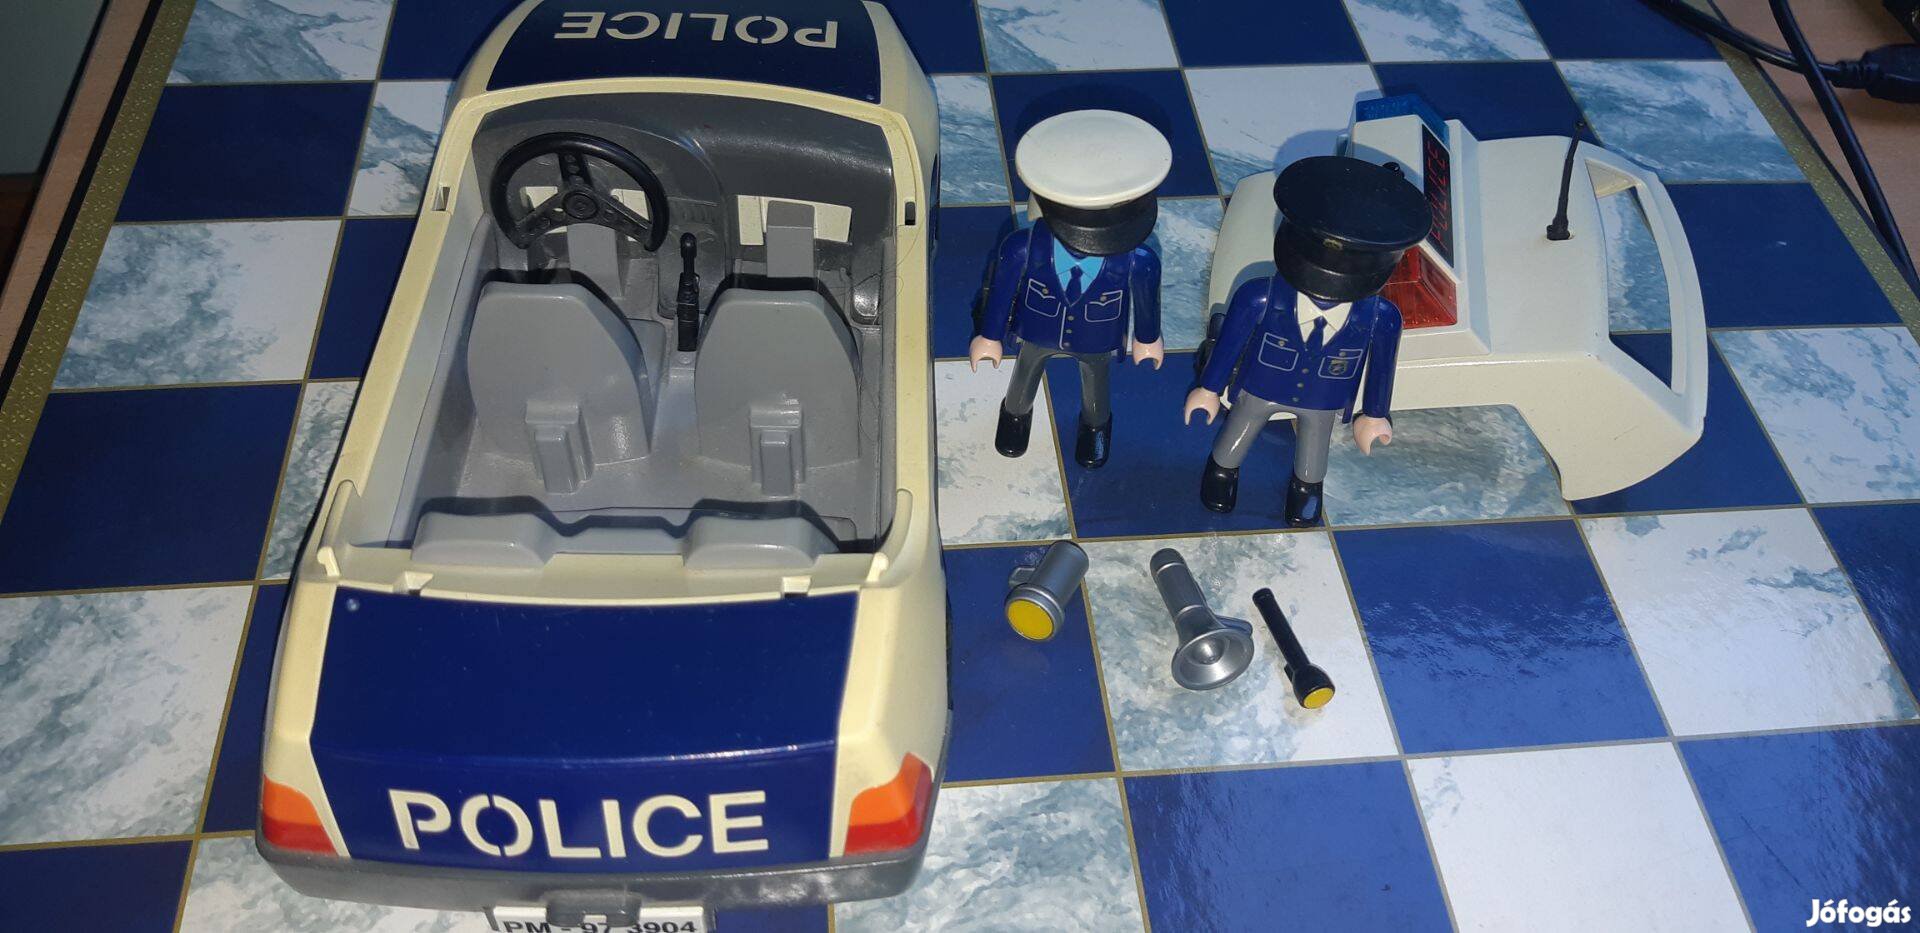 Playmobil rendőrautó